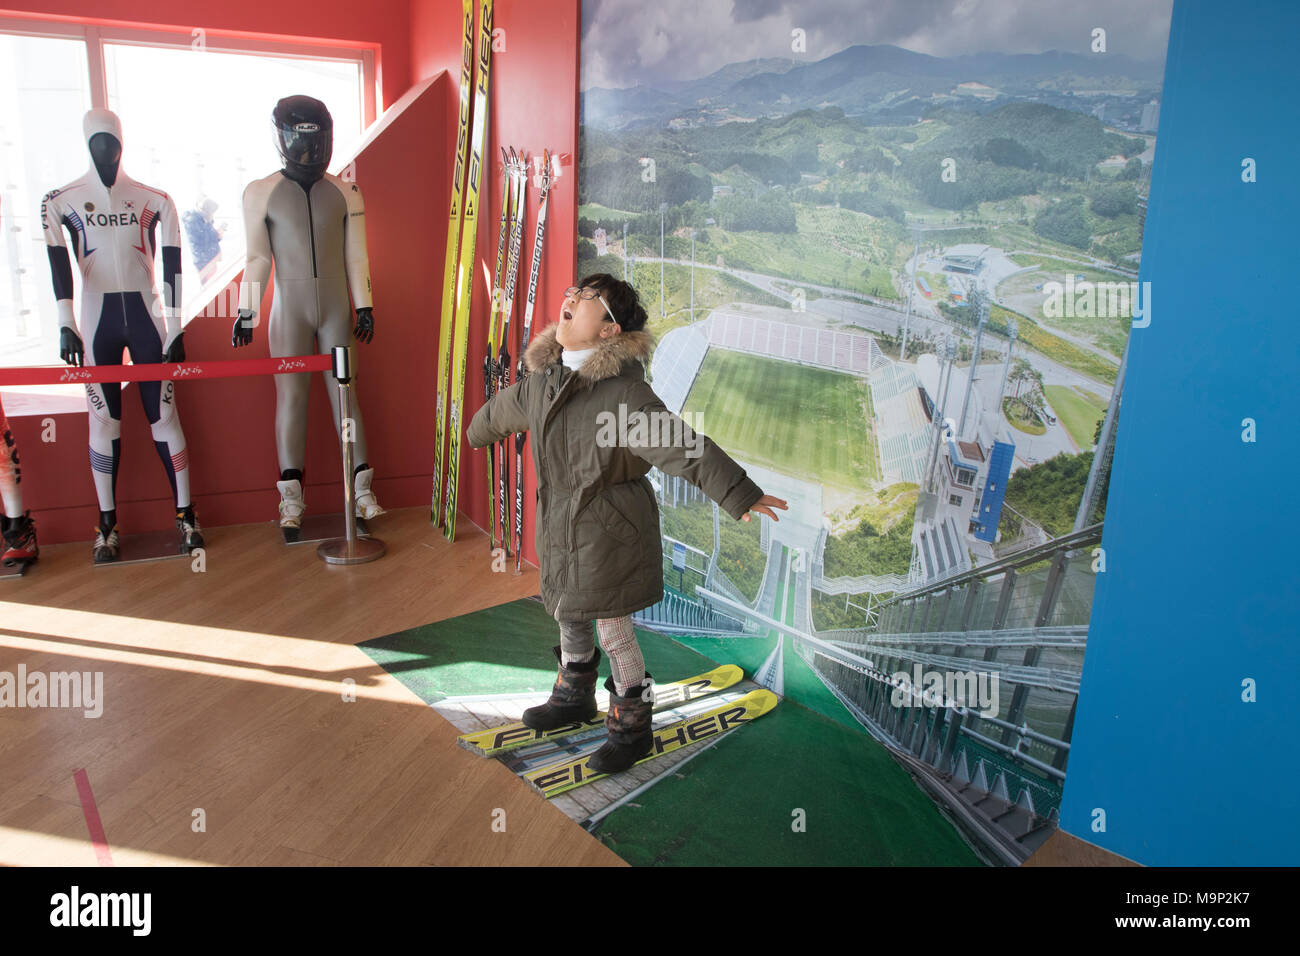 Ein Junge imaginären spielt er fliegen ist während einer Schanze bei den Olympischen Skispringen Turm von alpensia Resort in Südkorea. Die alpensia Resort ist ein Skigebiet und eine touristische Attraktion. Es ist auf dem Gebiet der Gemeinde von daegwallyeong-myeon befindet sich in der Grafschaft von Pyeongchang, die Olympischen Winterspiele hosting im Februar 2018. Das Skigebiet ist ca. 2,5 Stunden von Seoul oder Incheon Airport mit dem Auto, überwiegend alle Autobahn. Alpensia hat sechs Pisten für Ski und Snowboard, mit bis zu 1,4 km (0.87 mi) lang, für Anfänger und Fortgeschrittene, und einen Bereich für reserviert Stockfoto